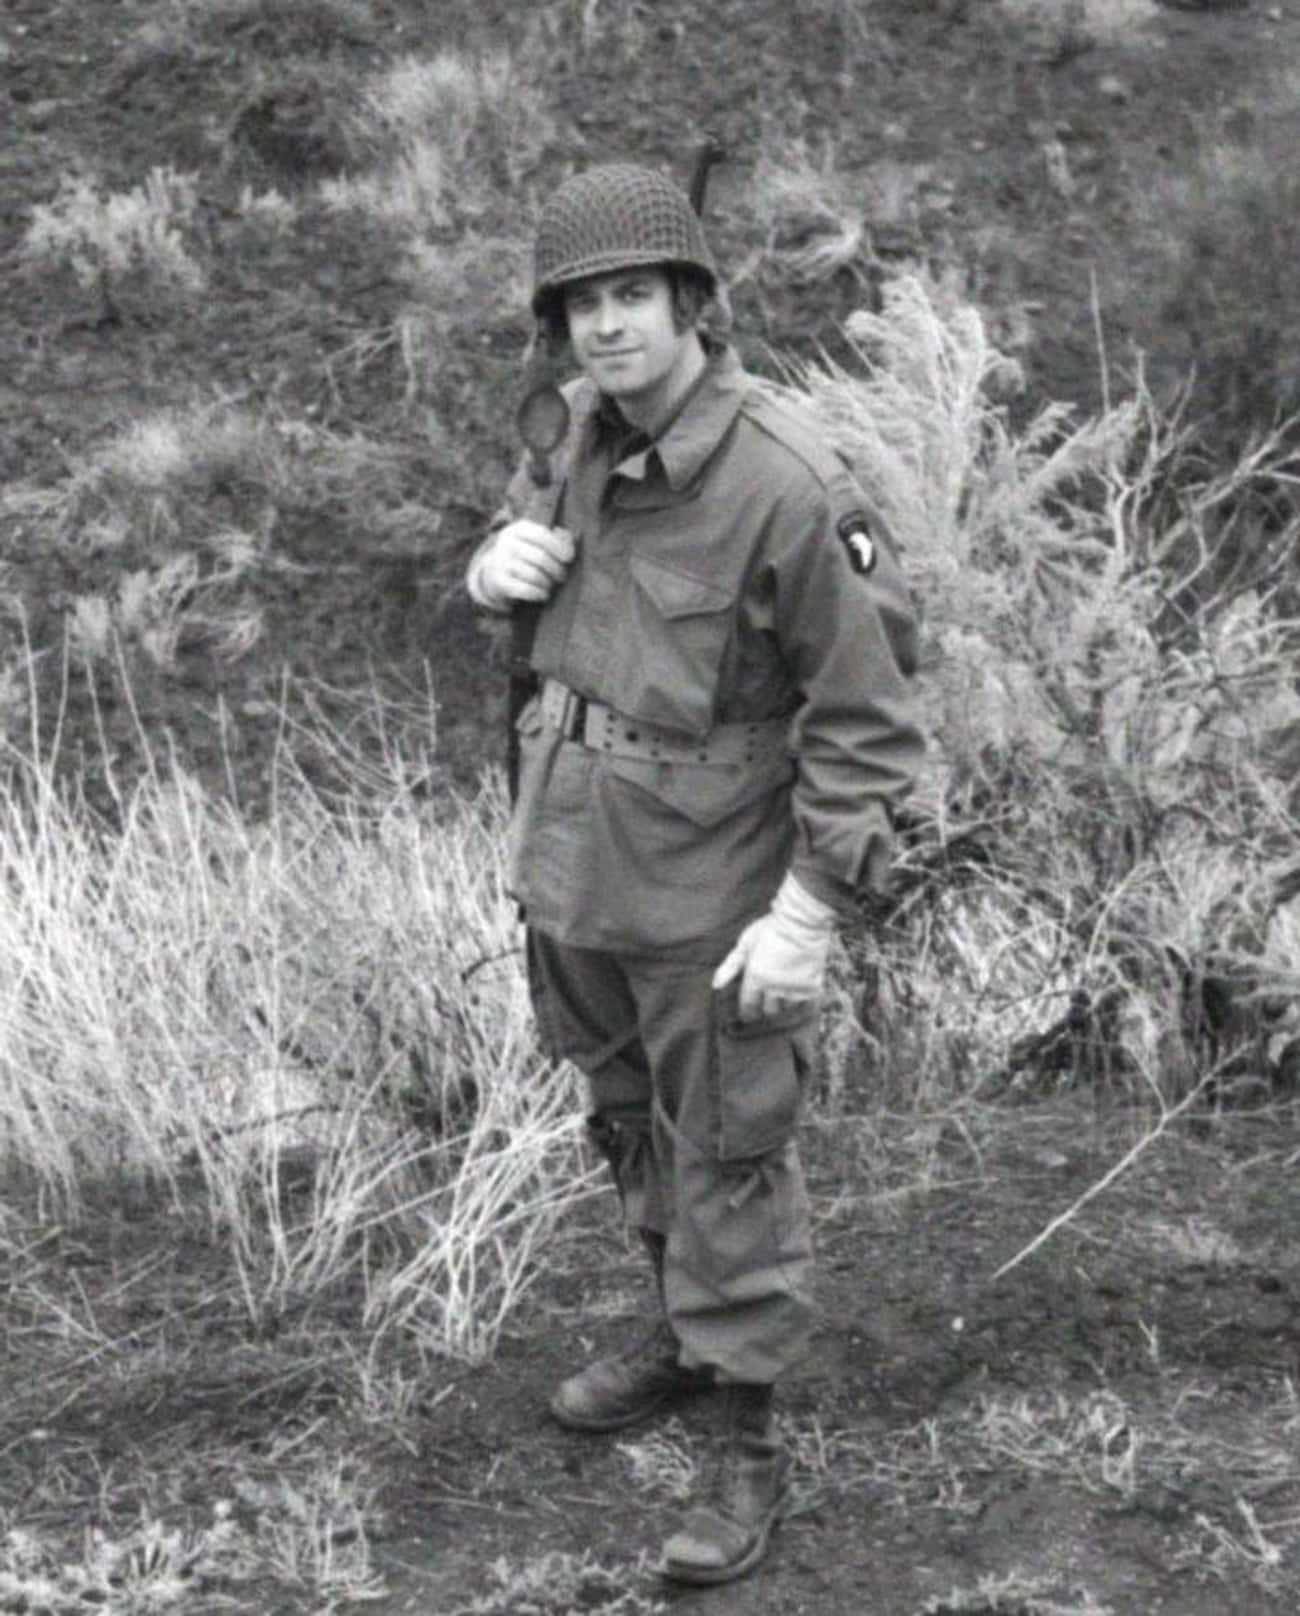 The 1942 Paratrooper Uniform